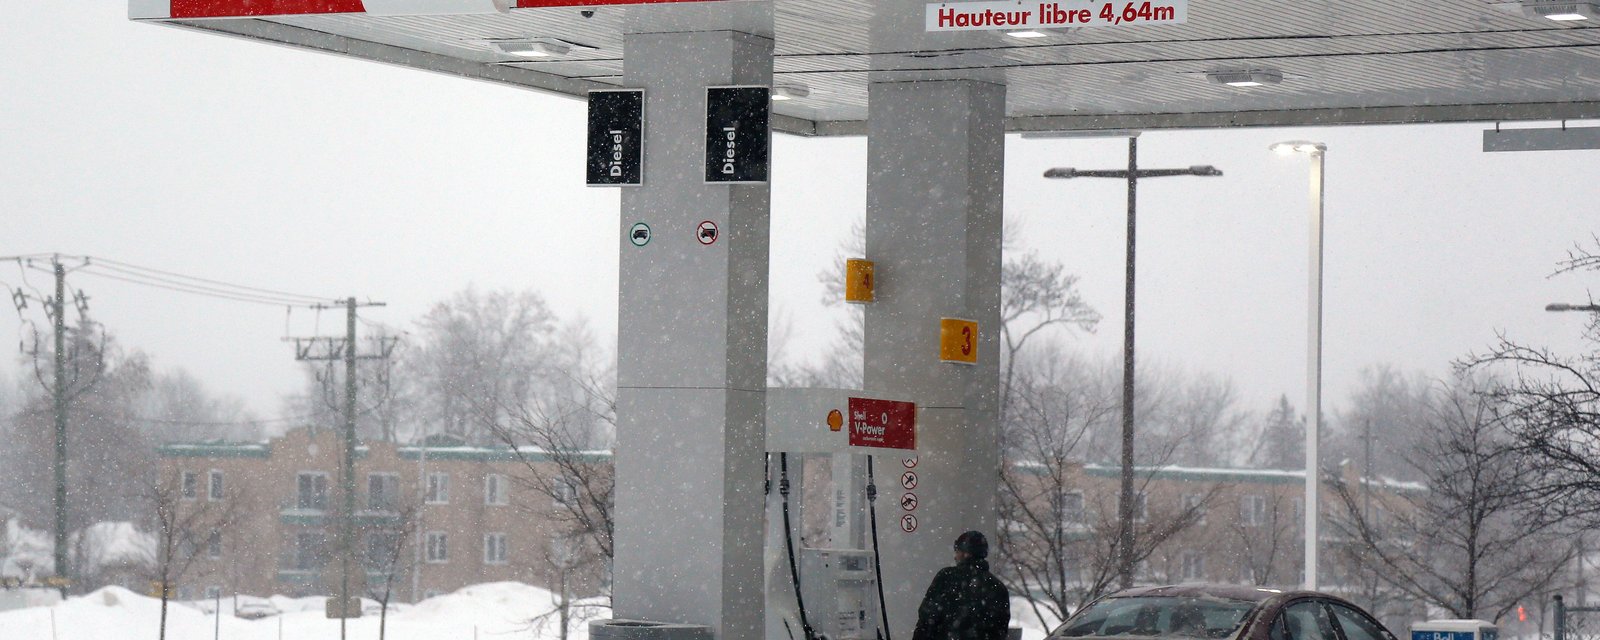 Les régions du Québec où vous trouverez l'essence la moins chère.